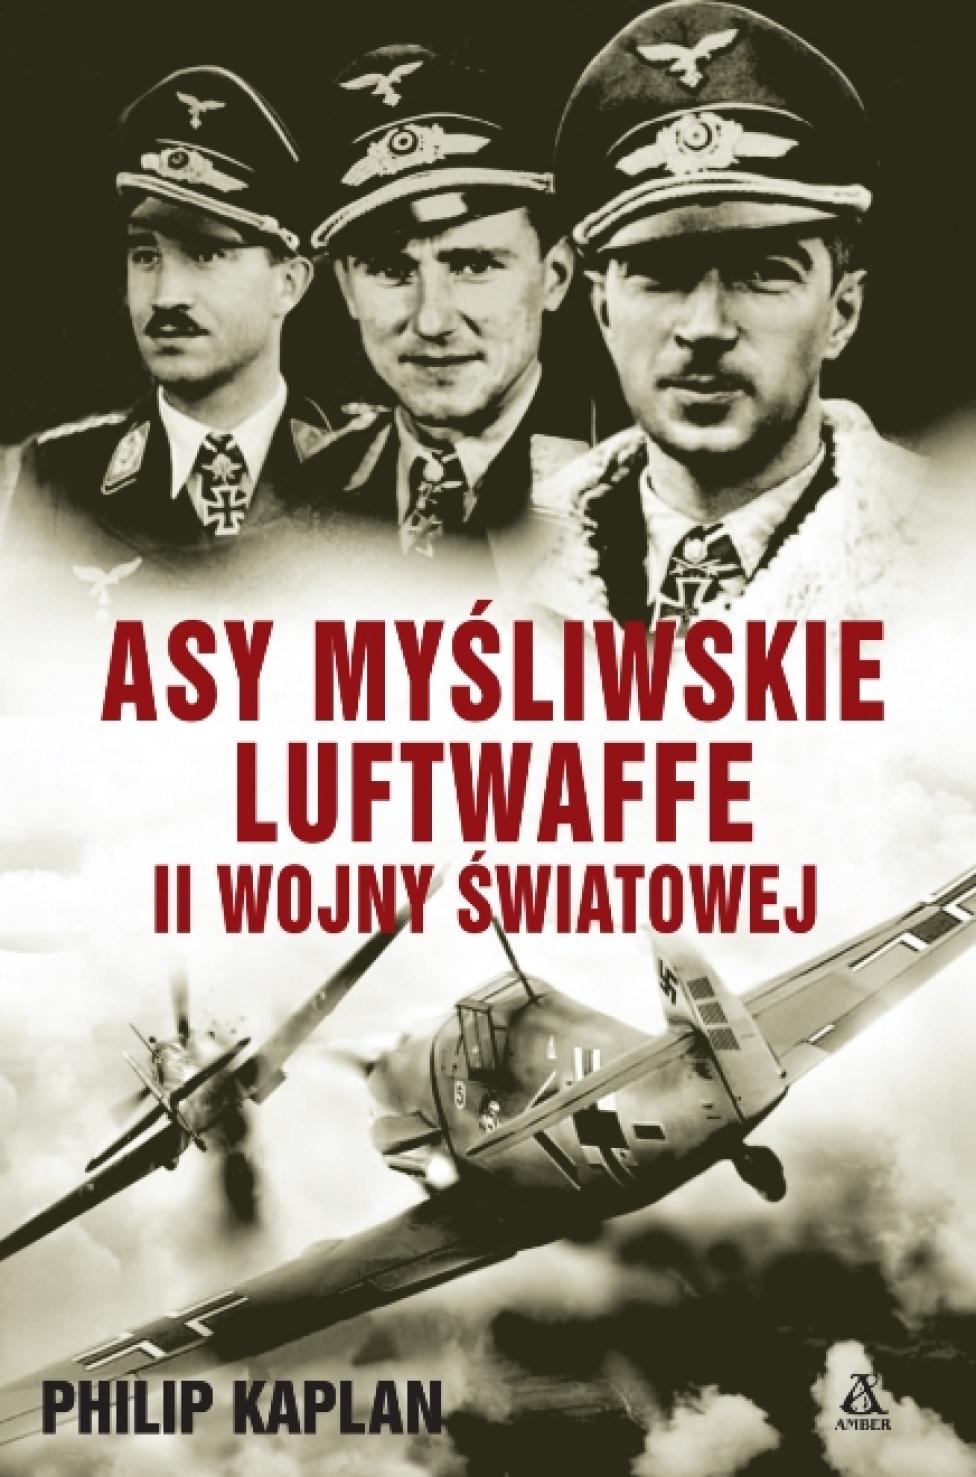 Książka "Asy myśliwskie Luftwaffe II wojny światowej" (fot. Wydawnictwo Amber)